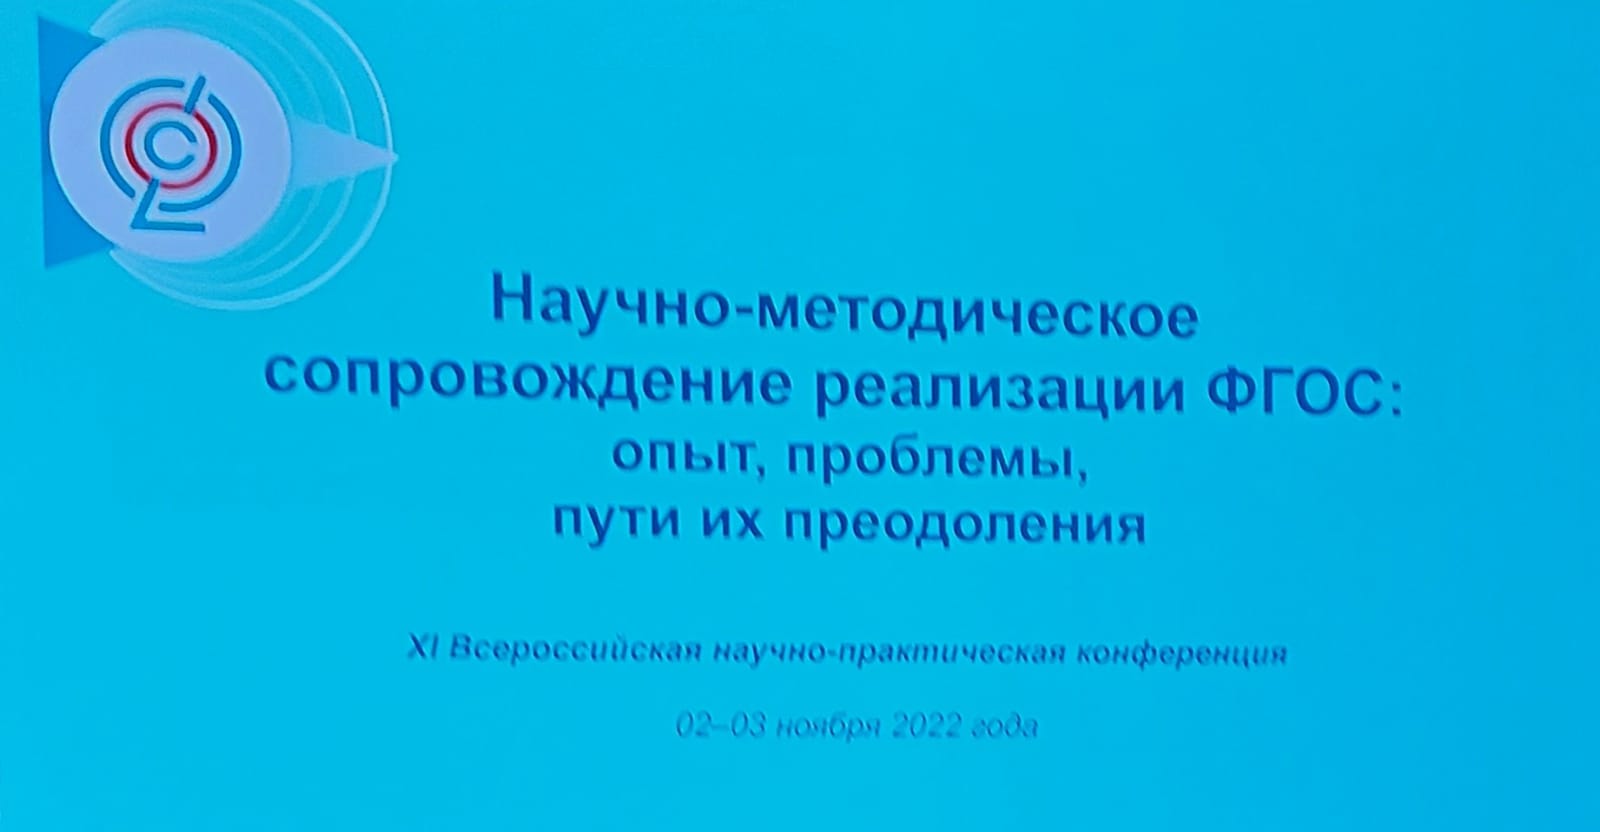 XI Всероссийская научно-практическая конференция